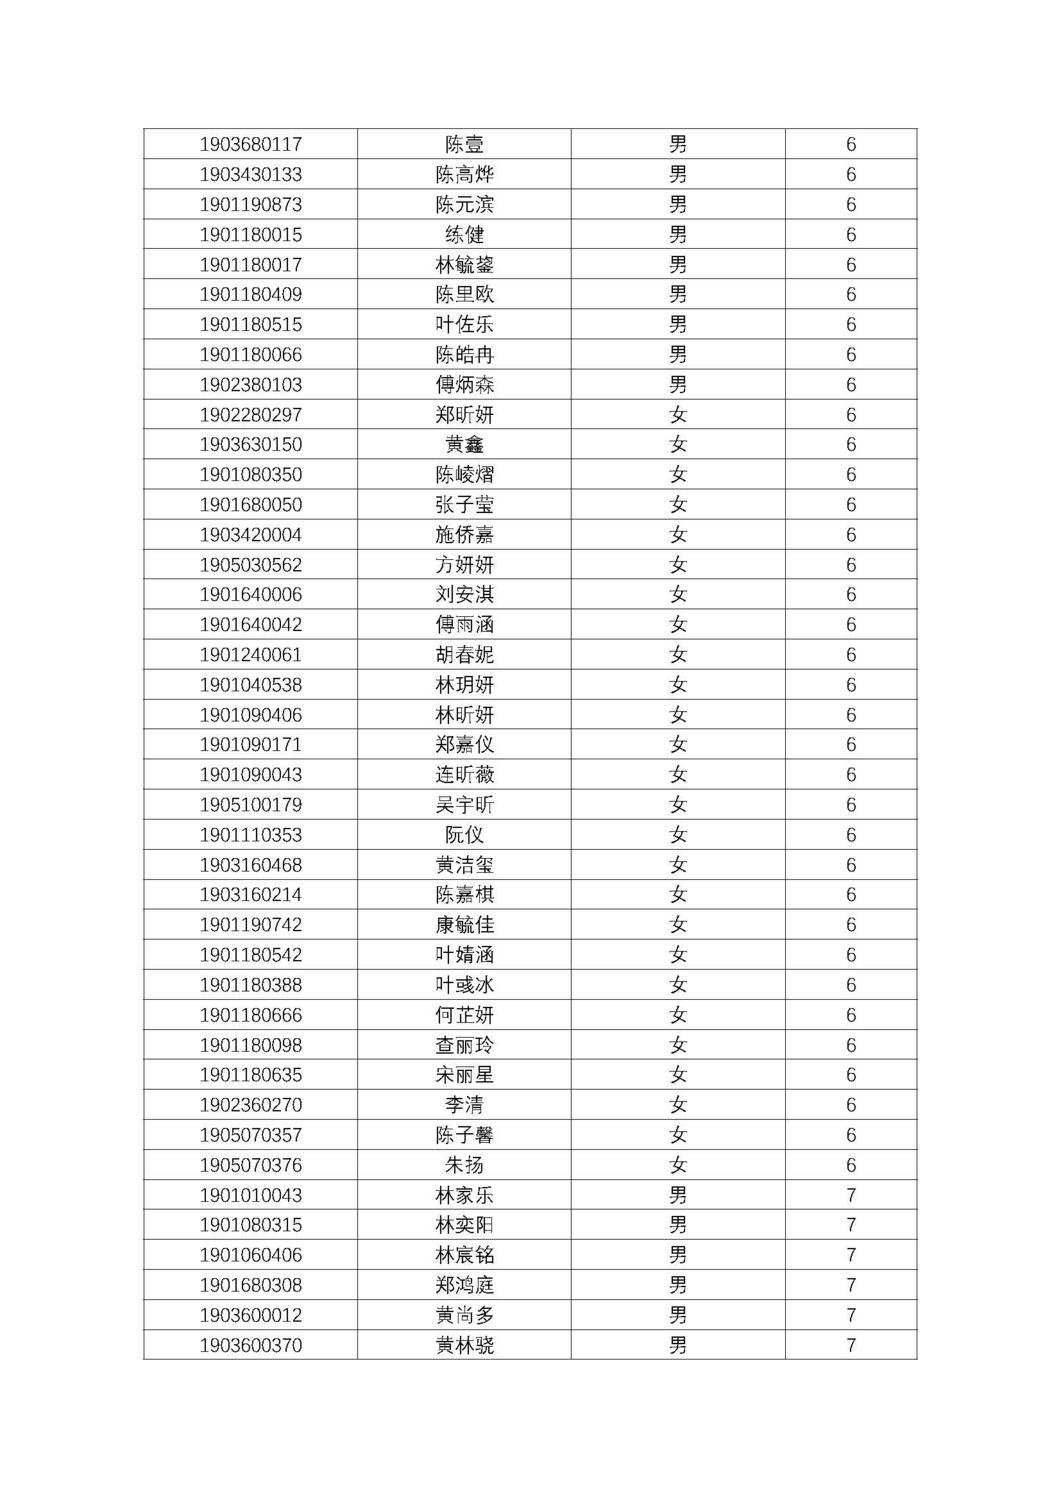 福州第十八中学2019级高一新生分班名单及报到须知_页面_08.jpg